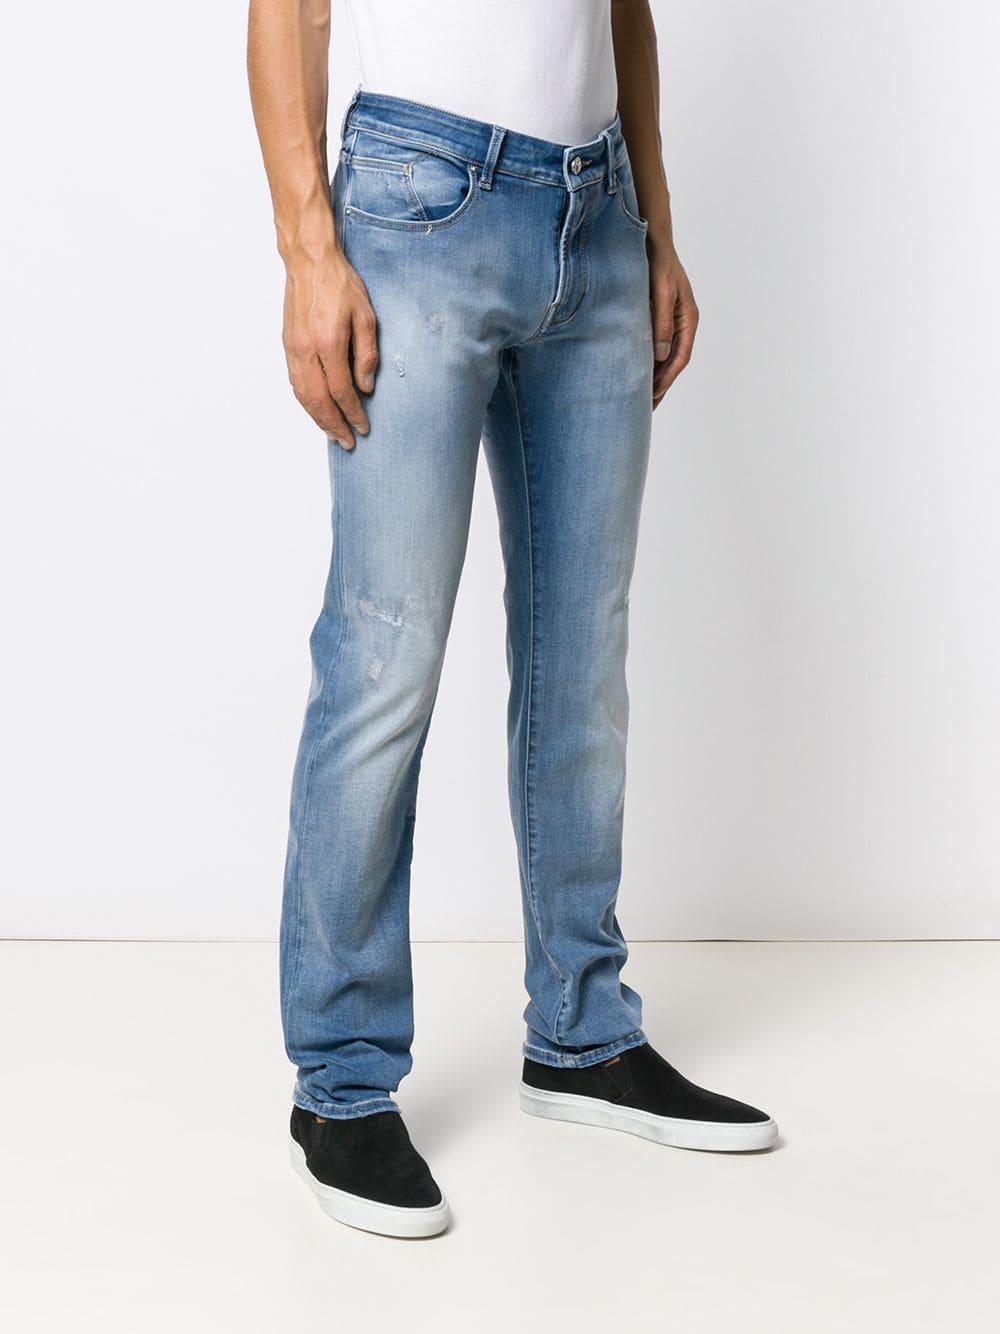 Karl Lagerfeld Denim Ripped Slim Jeans in Blue for Men - Lyst